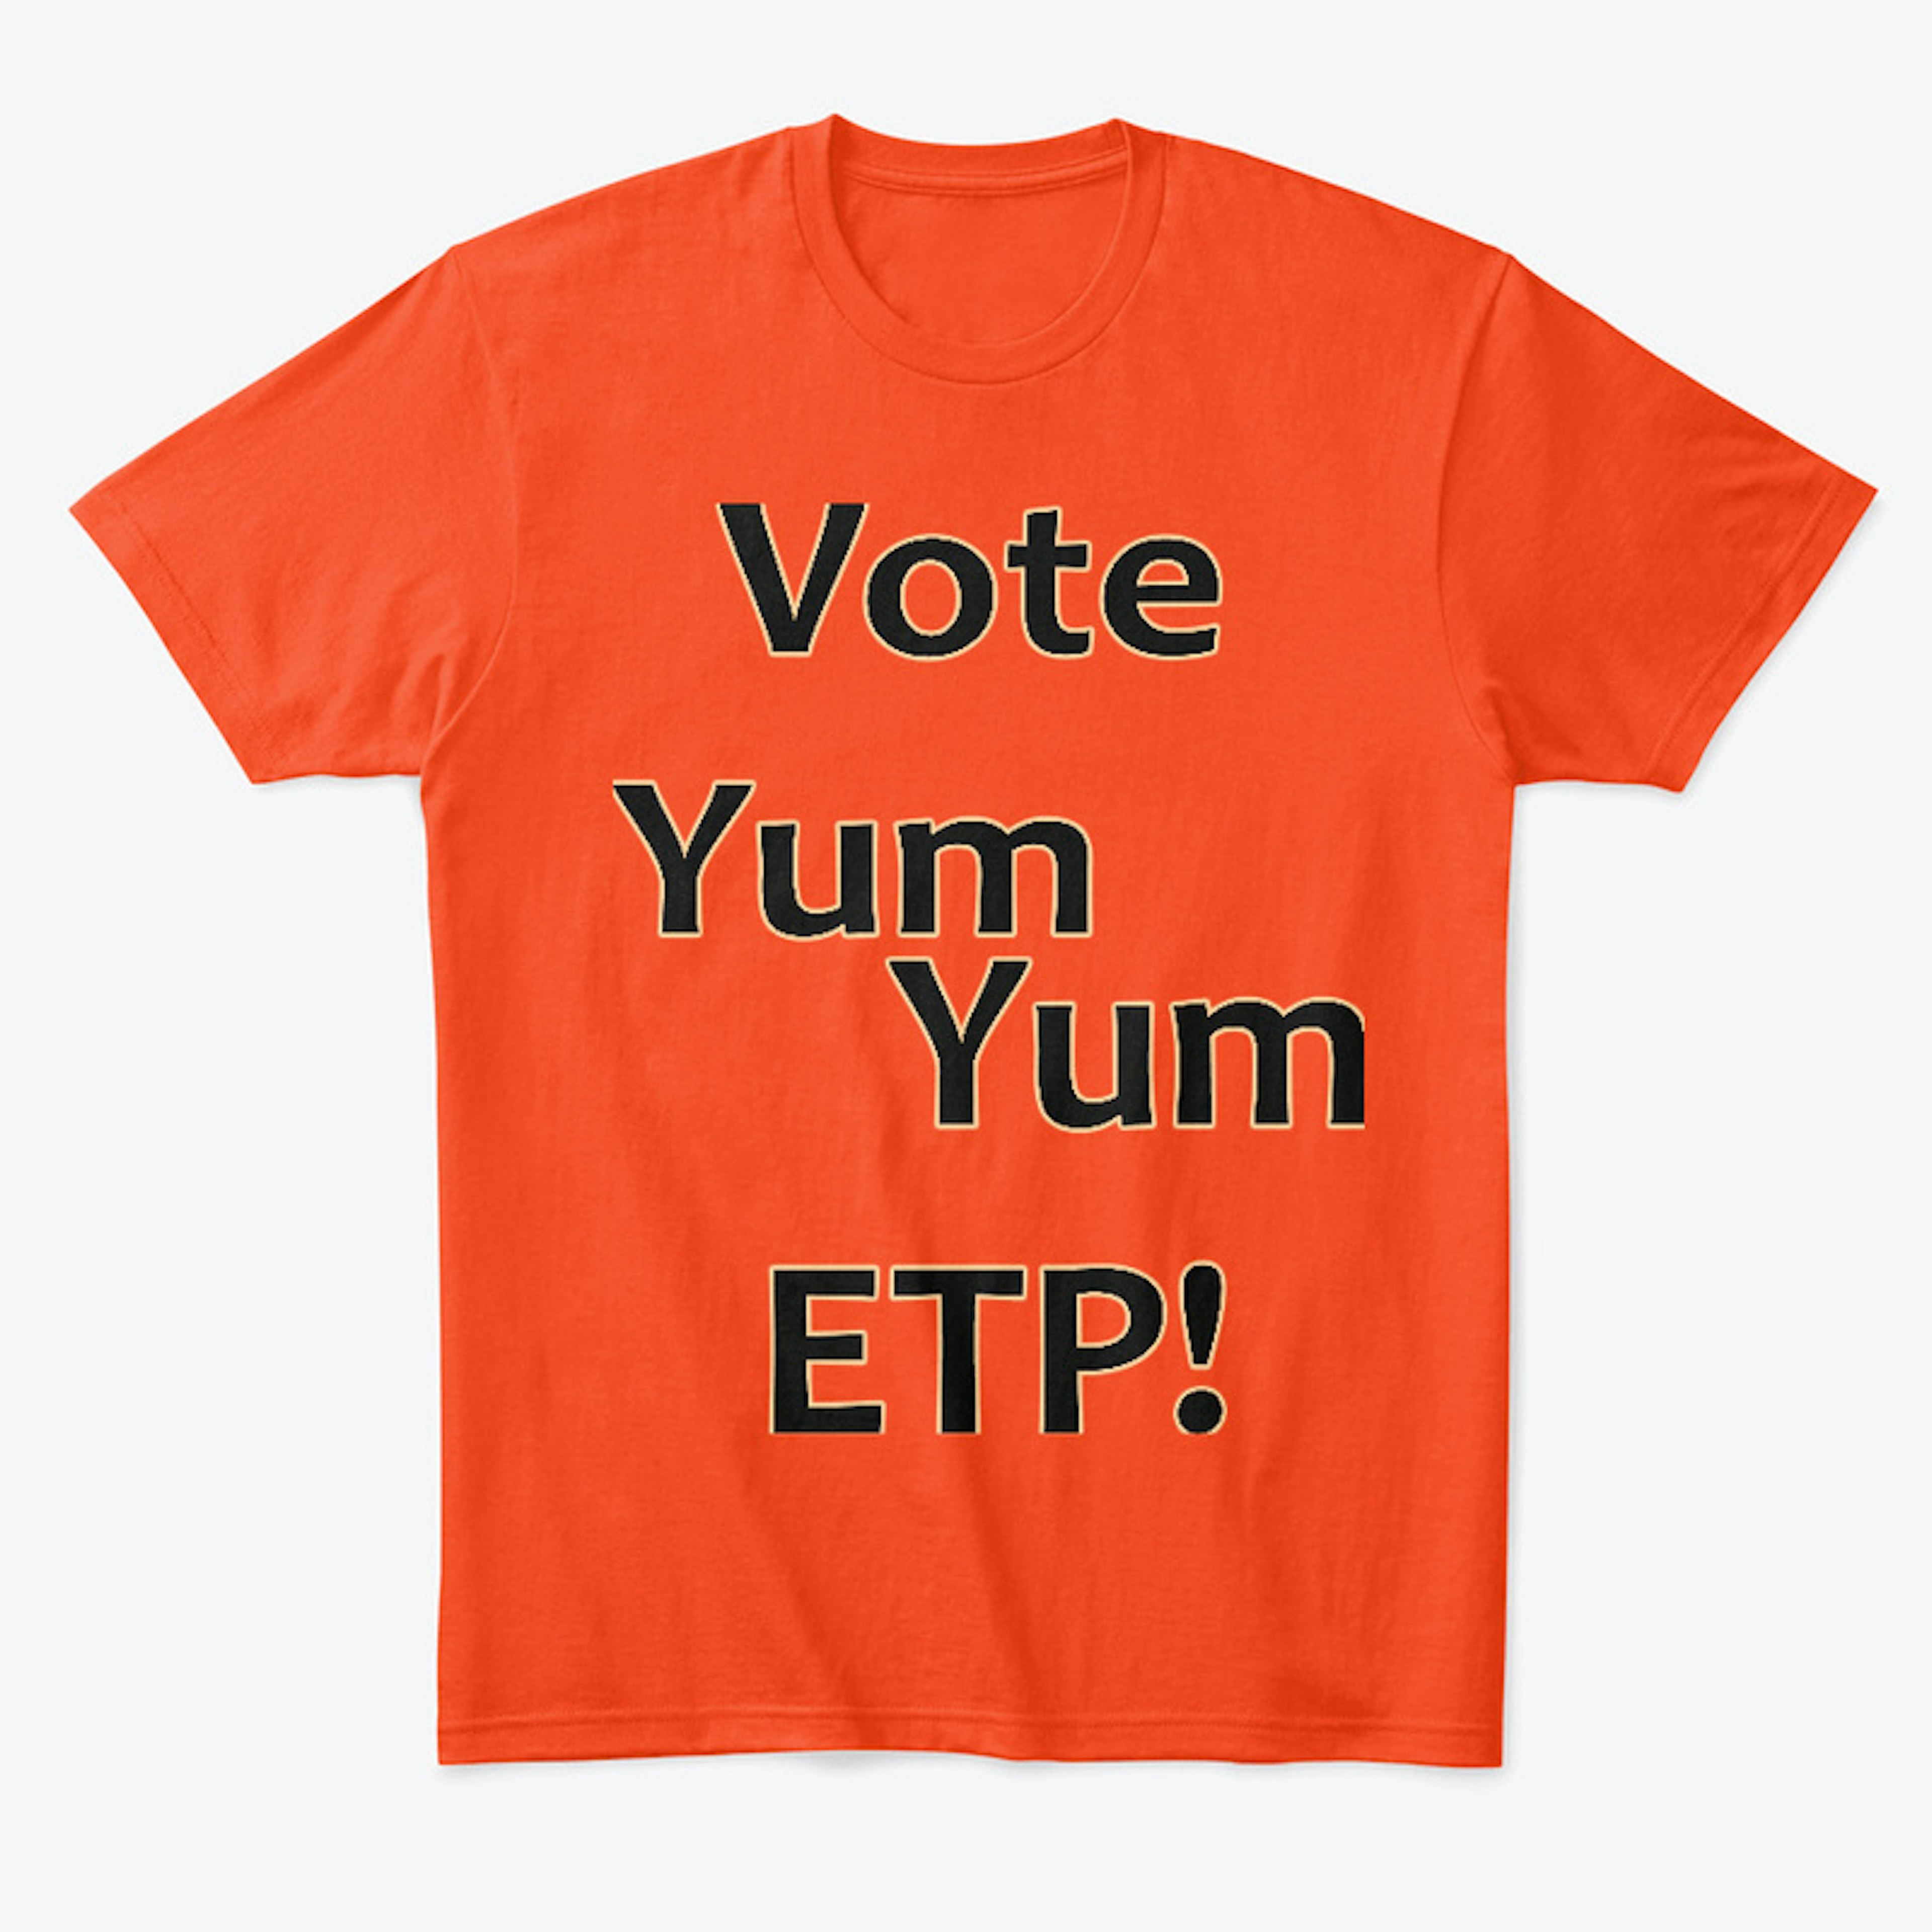 Vote Yum Yum ETP!